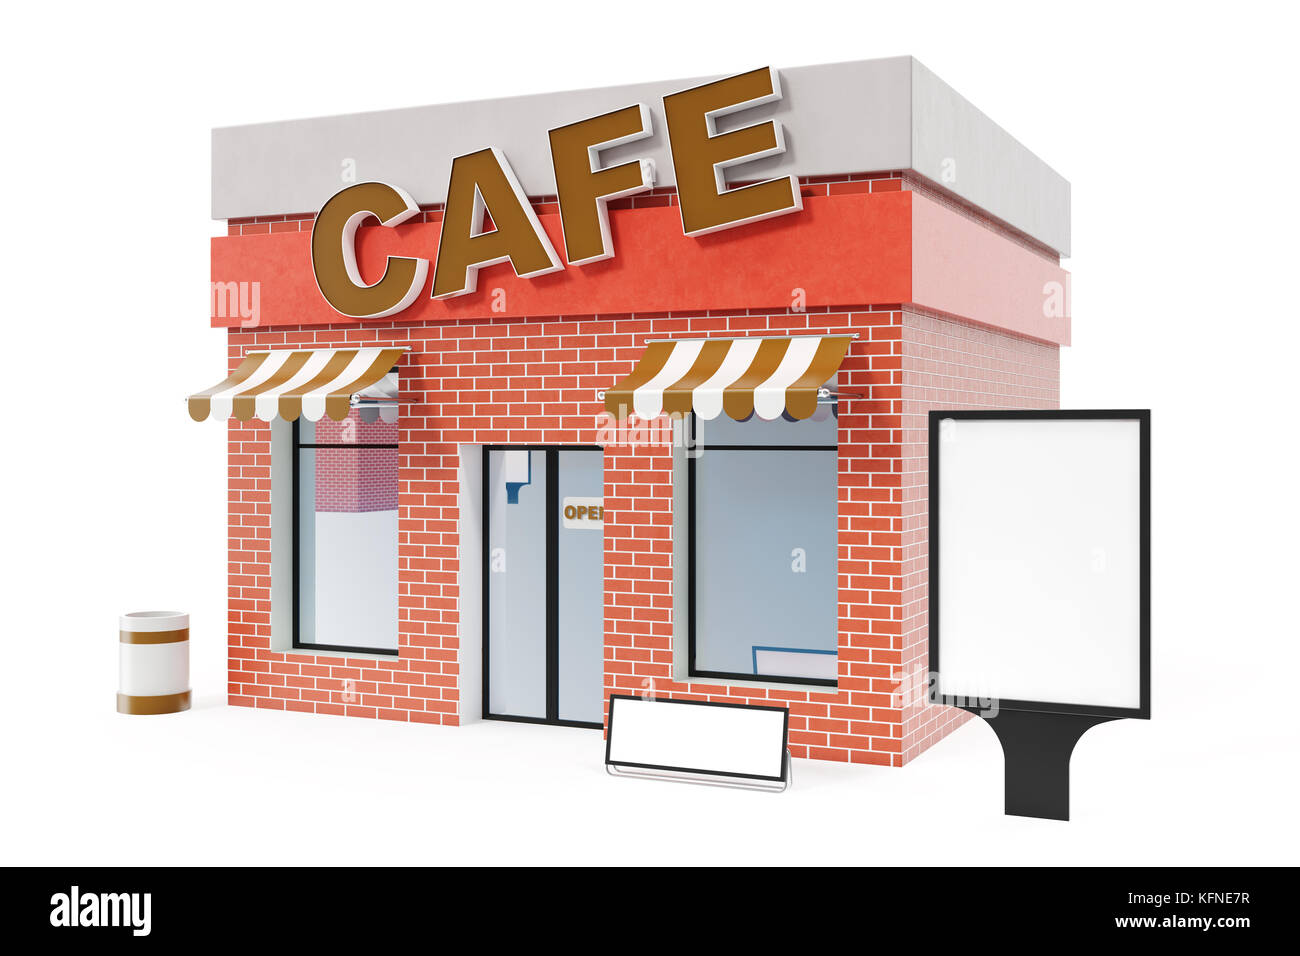 Cafe store avec l'exemplaire de l'espace a isolé sur fond blanc. boutique moderne des bâtiments, façades de magasin du marché extérieur. façade extérieure store Building, 3D Rendering Banque D'Images